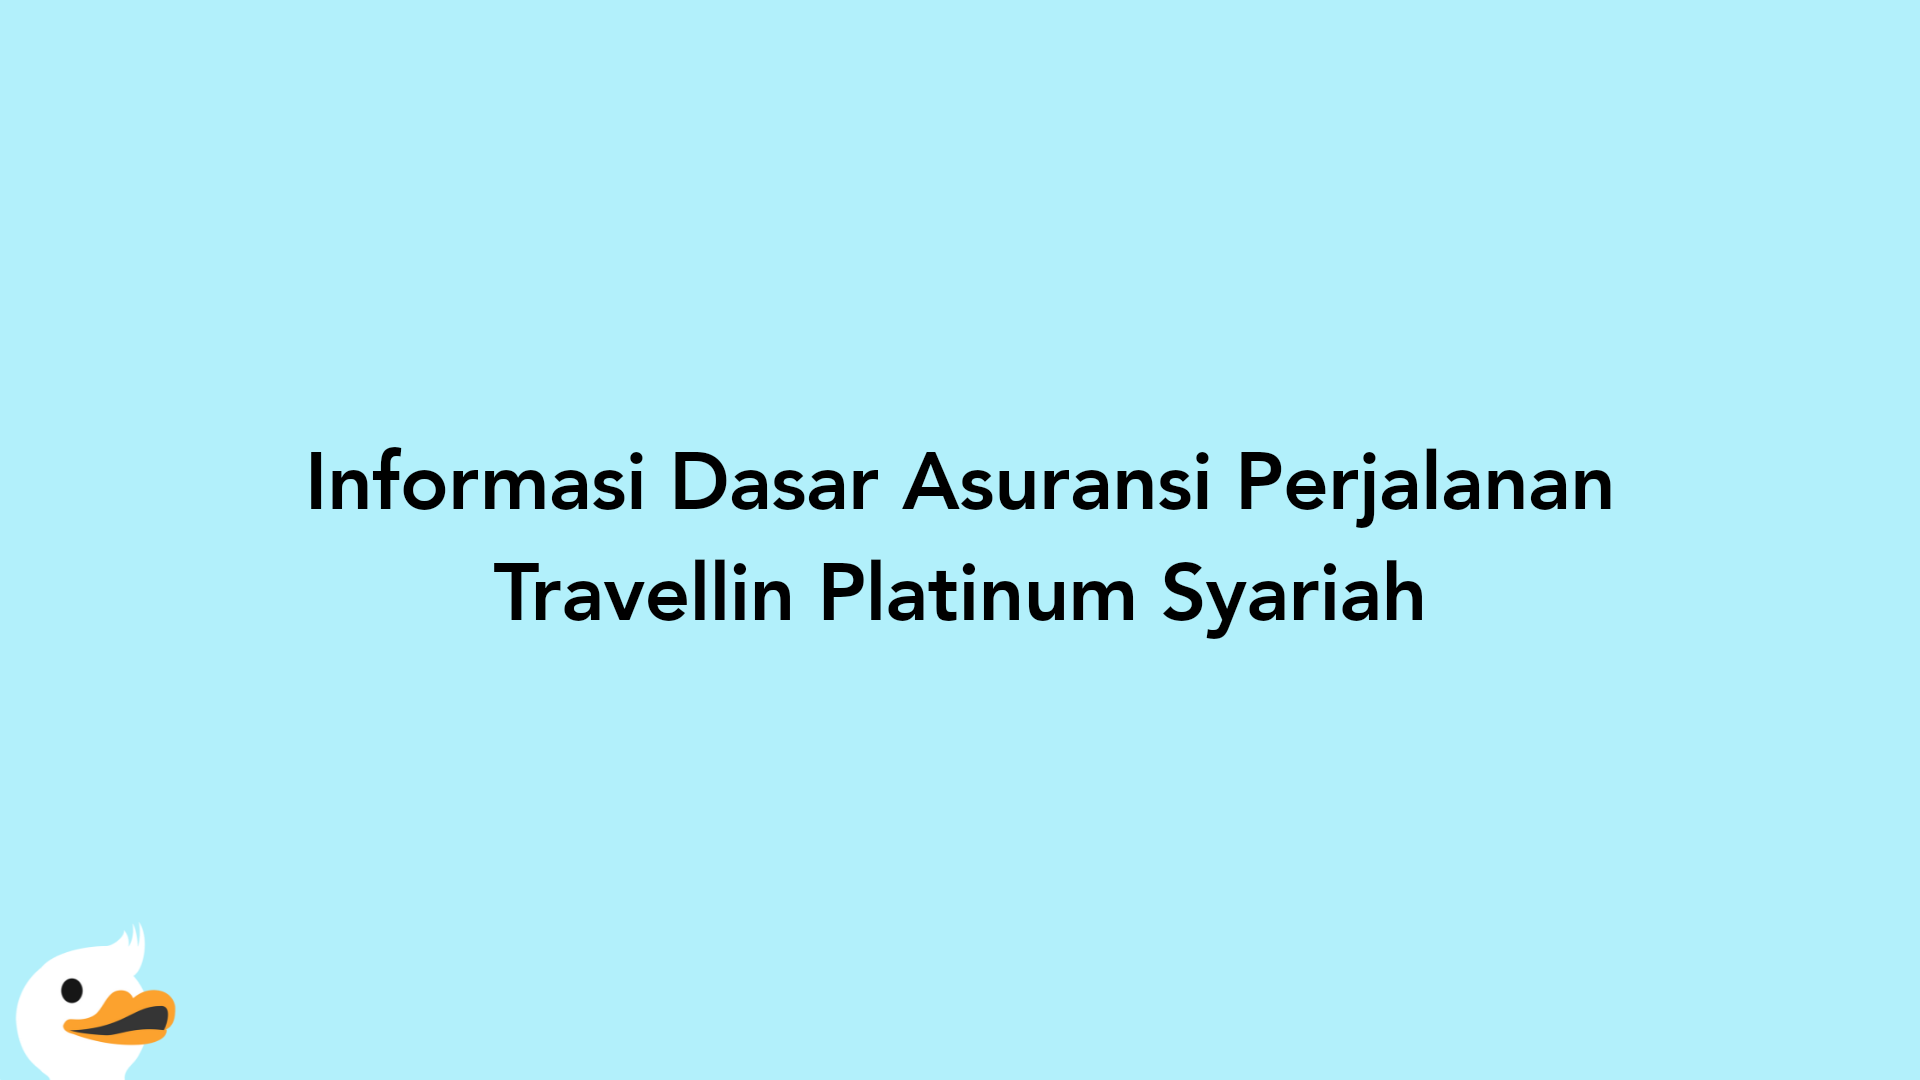 Informasi Dasar Asuransi Perjalanan Travellin Platinum Syariah